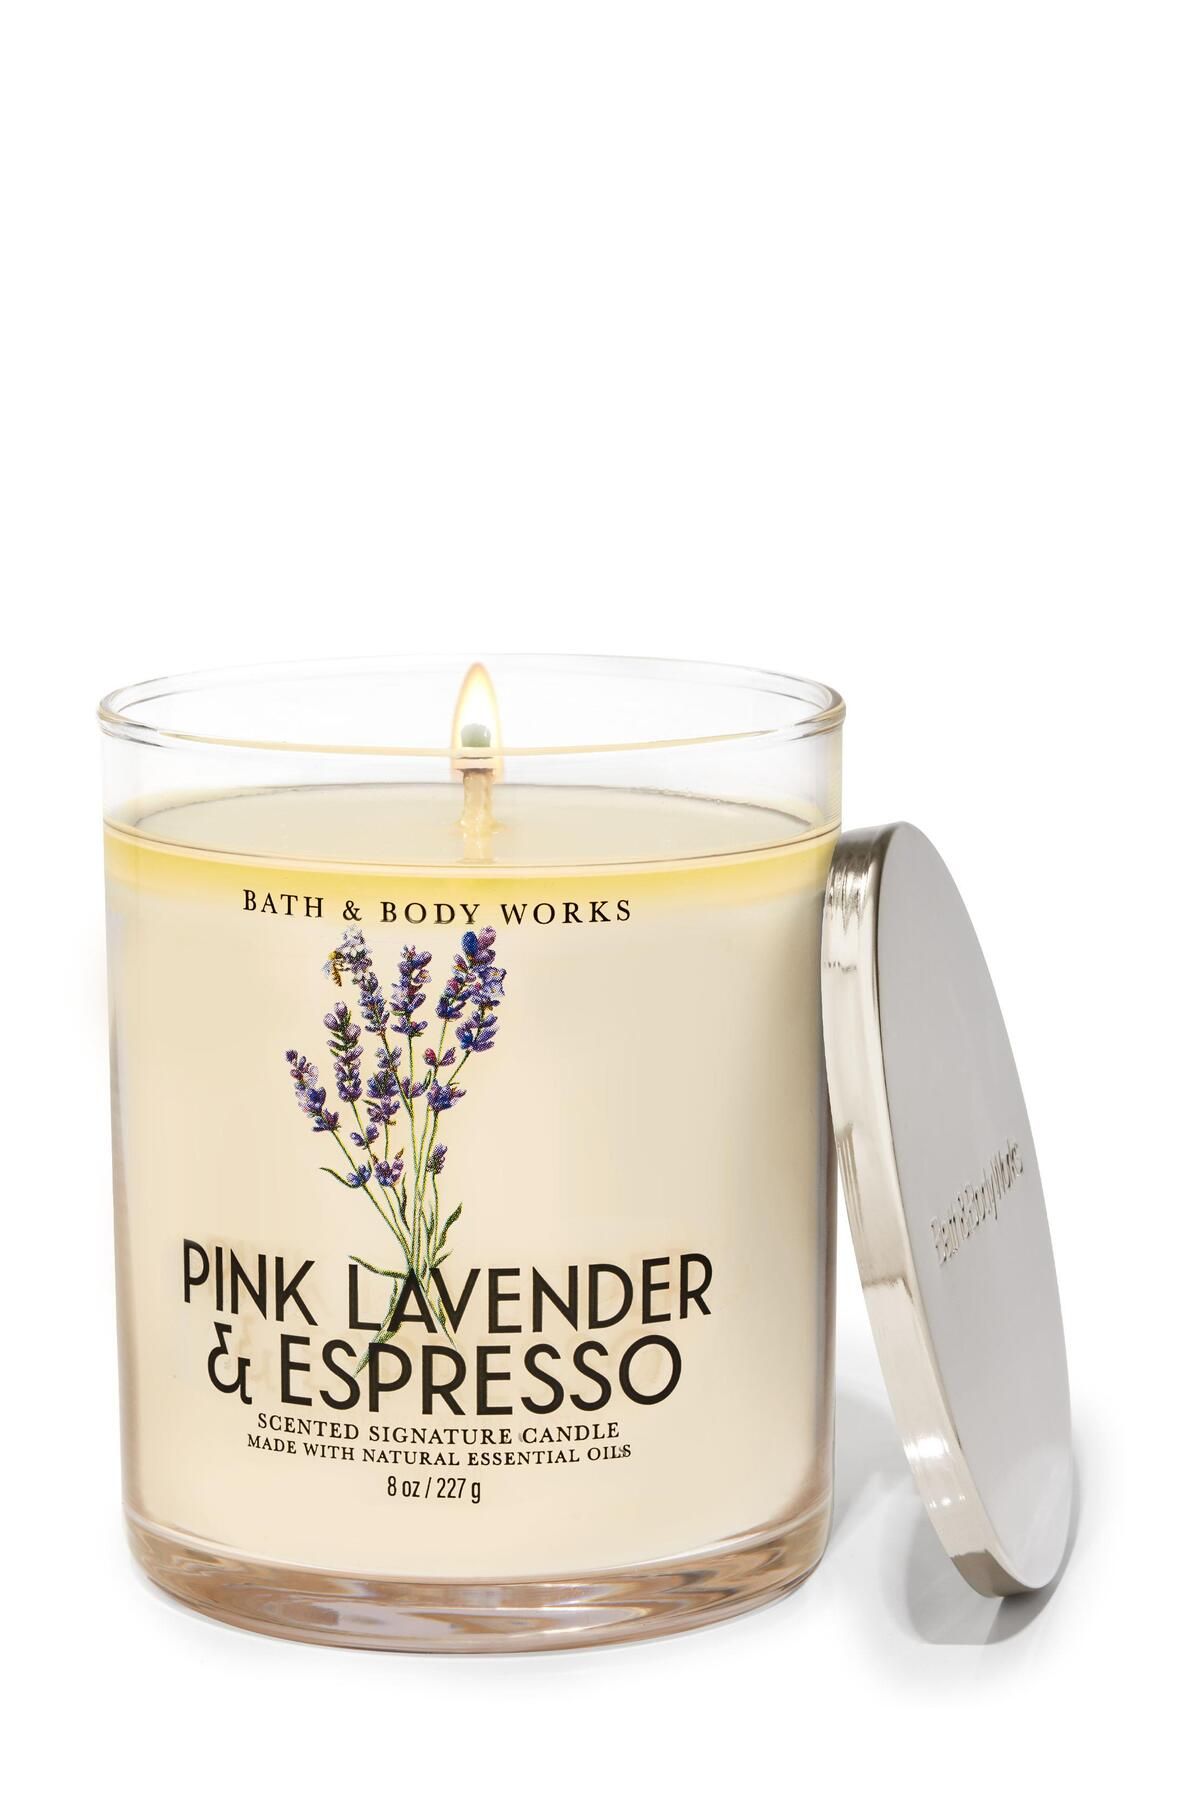 Bath & Body Works Pink Lavender & Espresso Orta Boy Mum